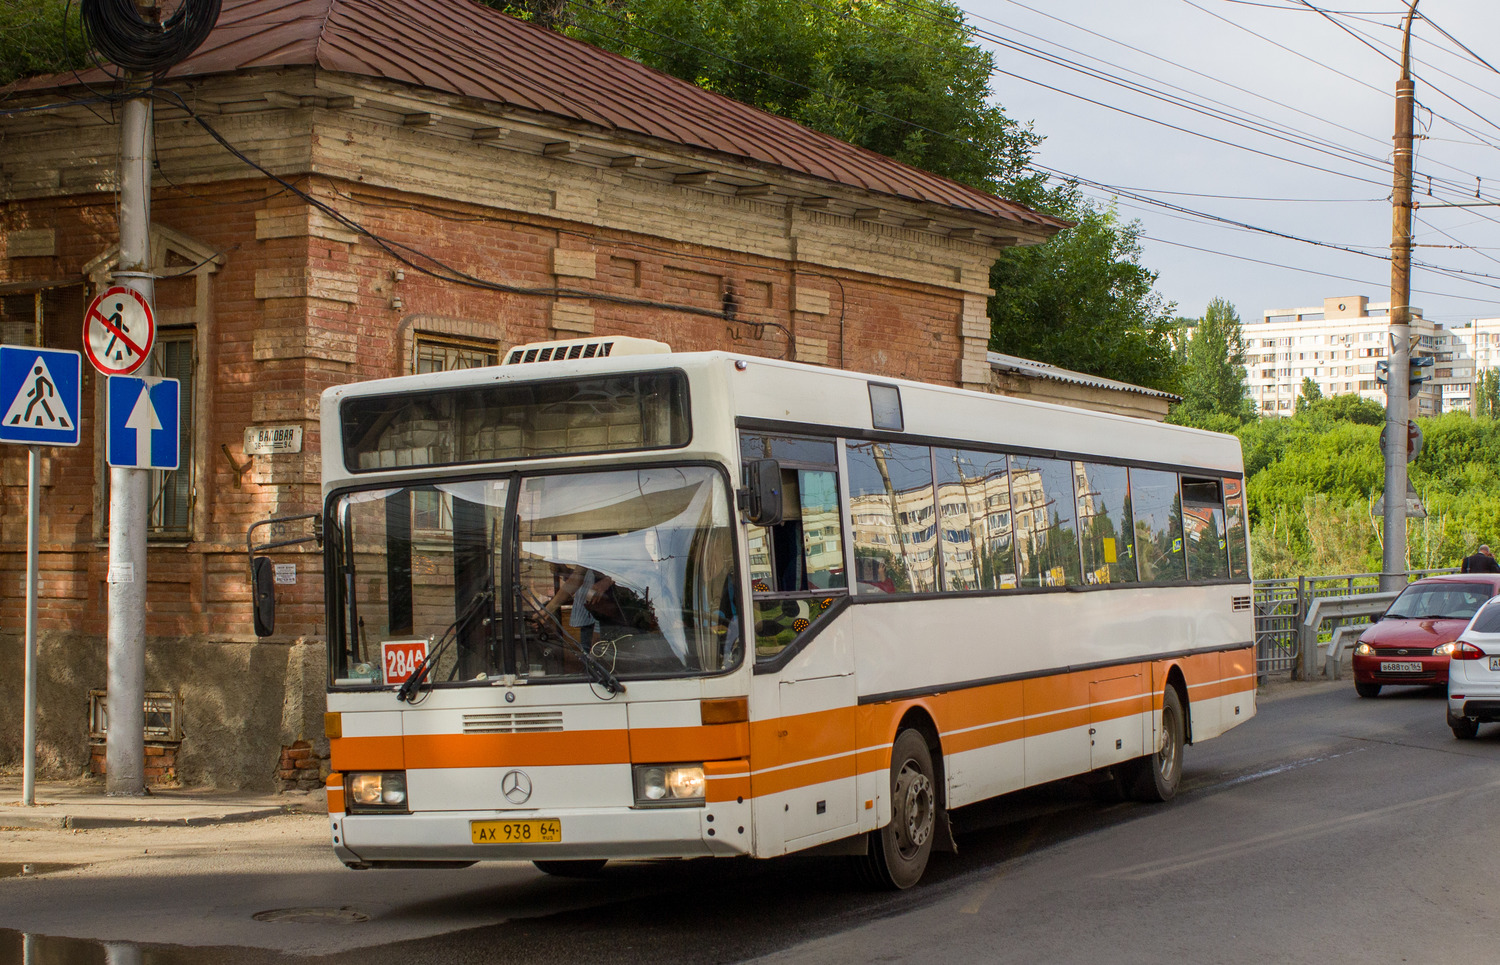 Saratov region, Mercedes-Benz O405 № АХ 938 64